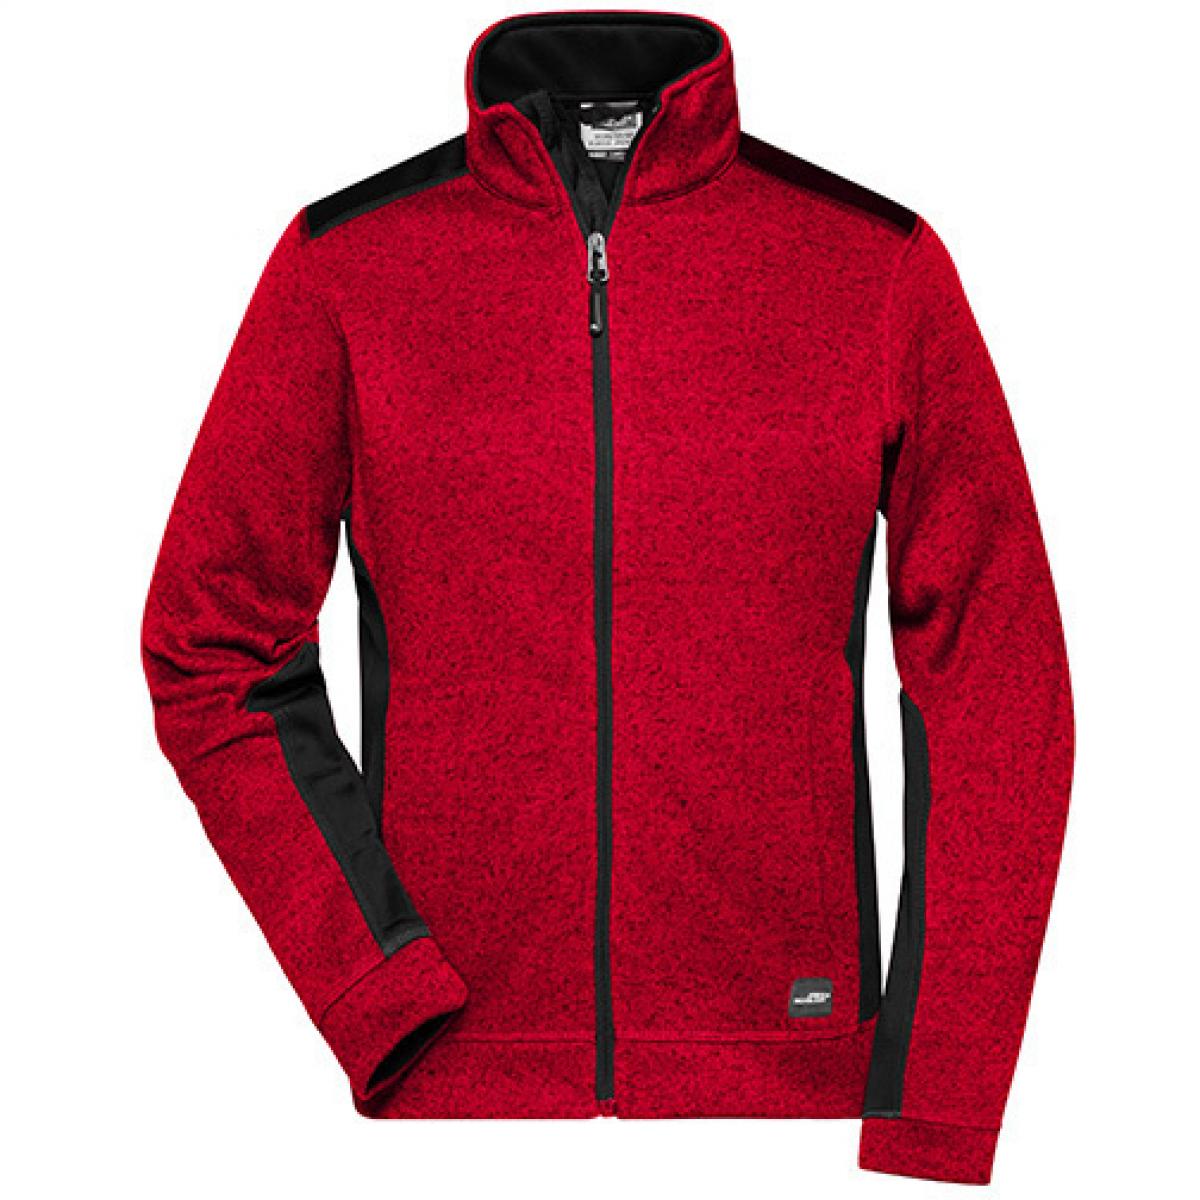 Hersteller: James+Nicholson Herstellernummer: JN861 Artikelbezeichnung: Damen Jacke, Ladies‘ Knitted Workwear Fleece Jacket -STRONG- Farbe: Red Melange/Black